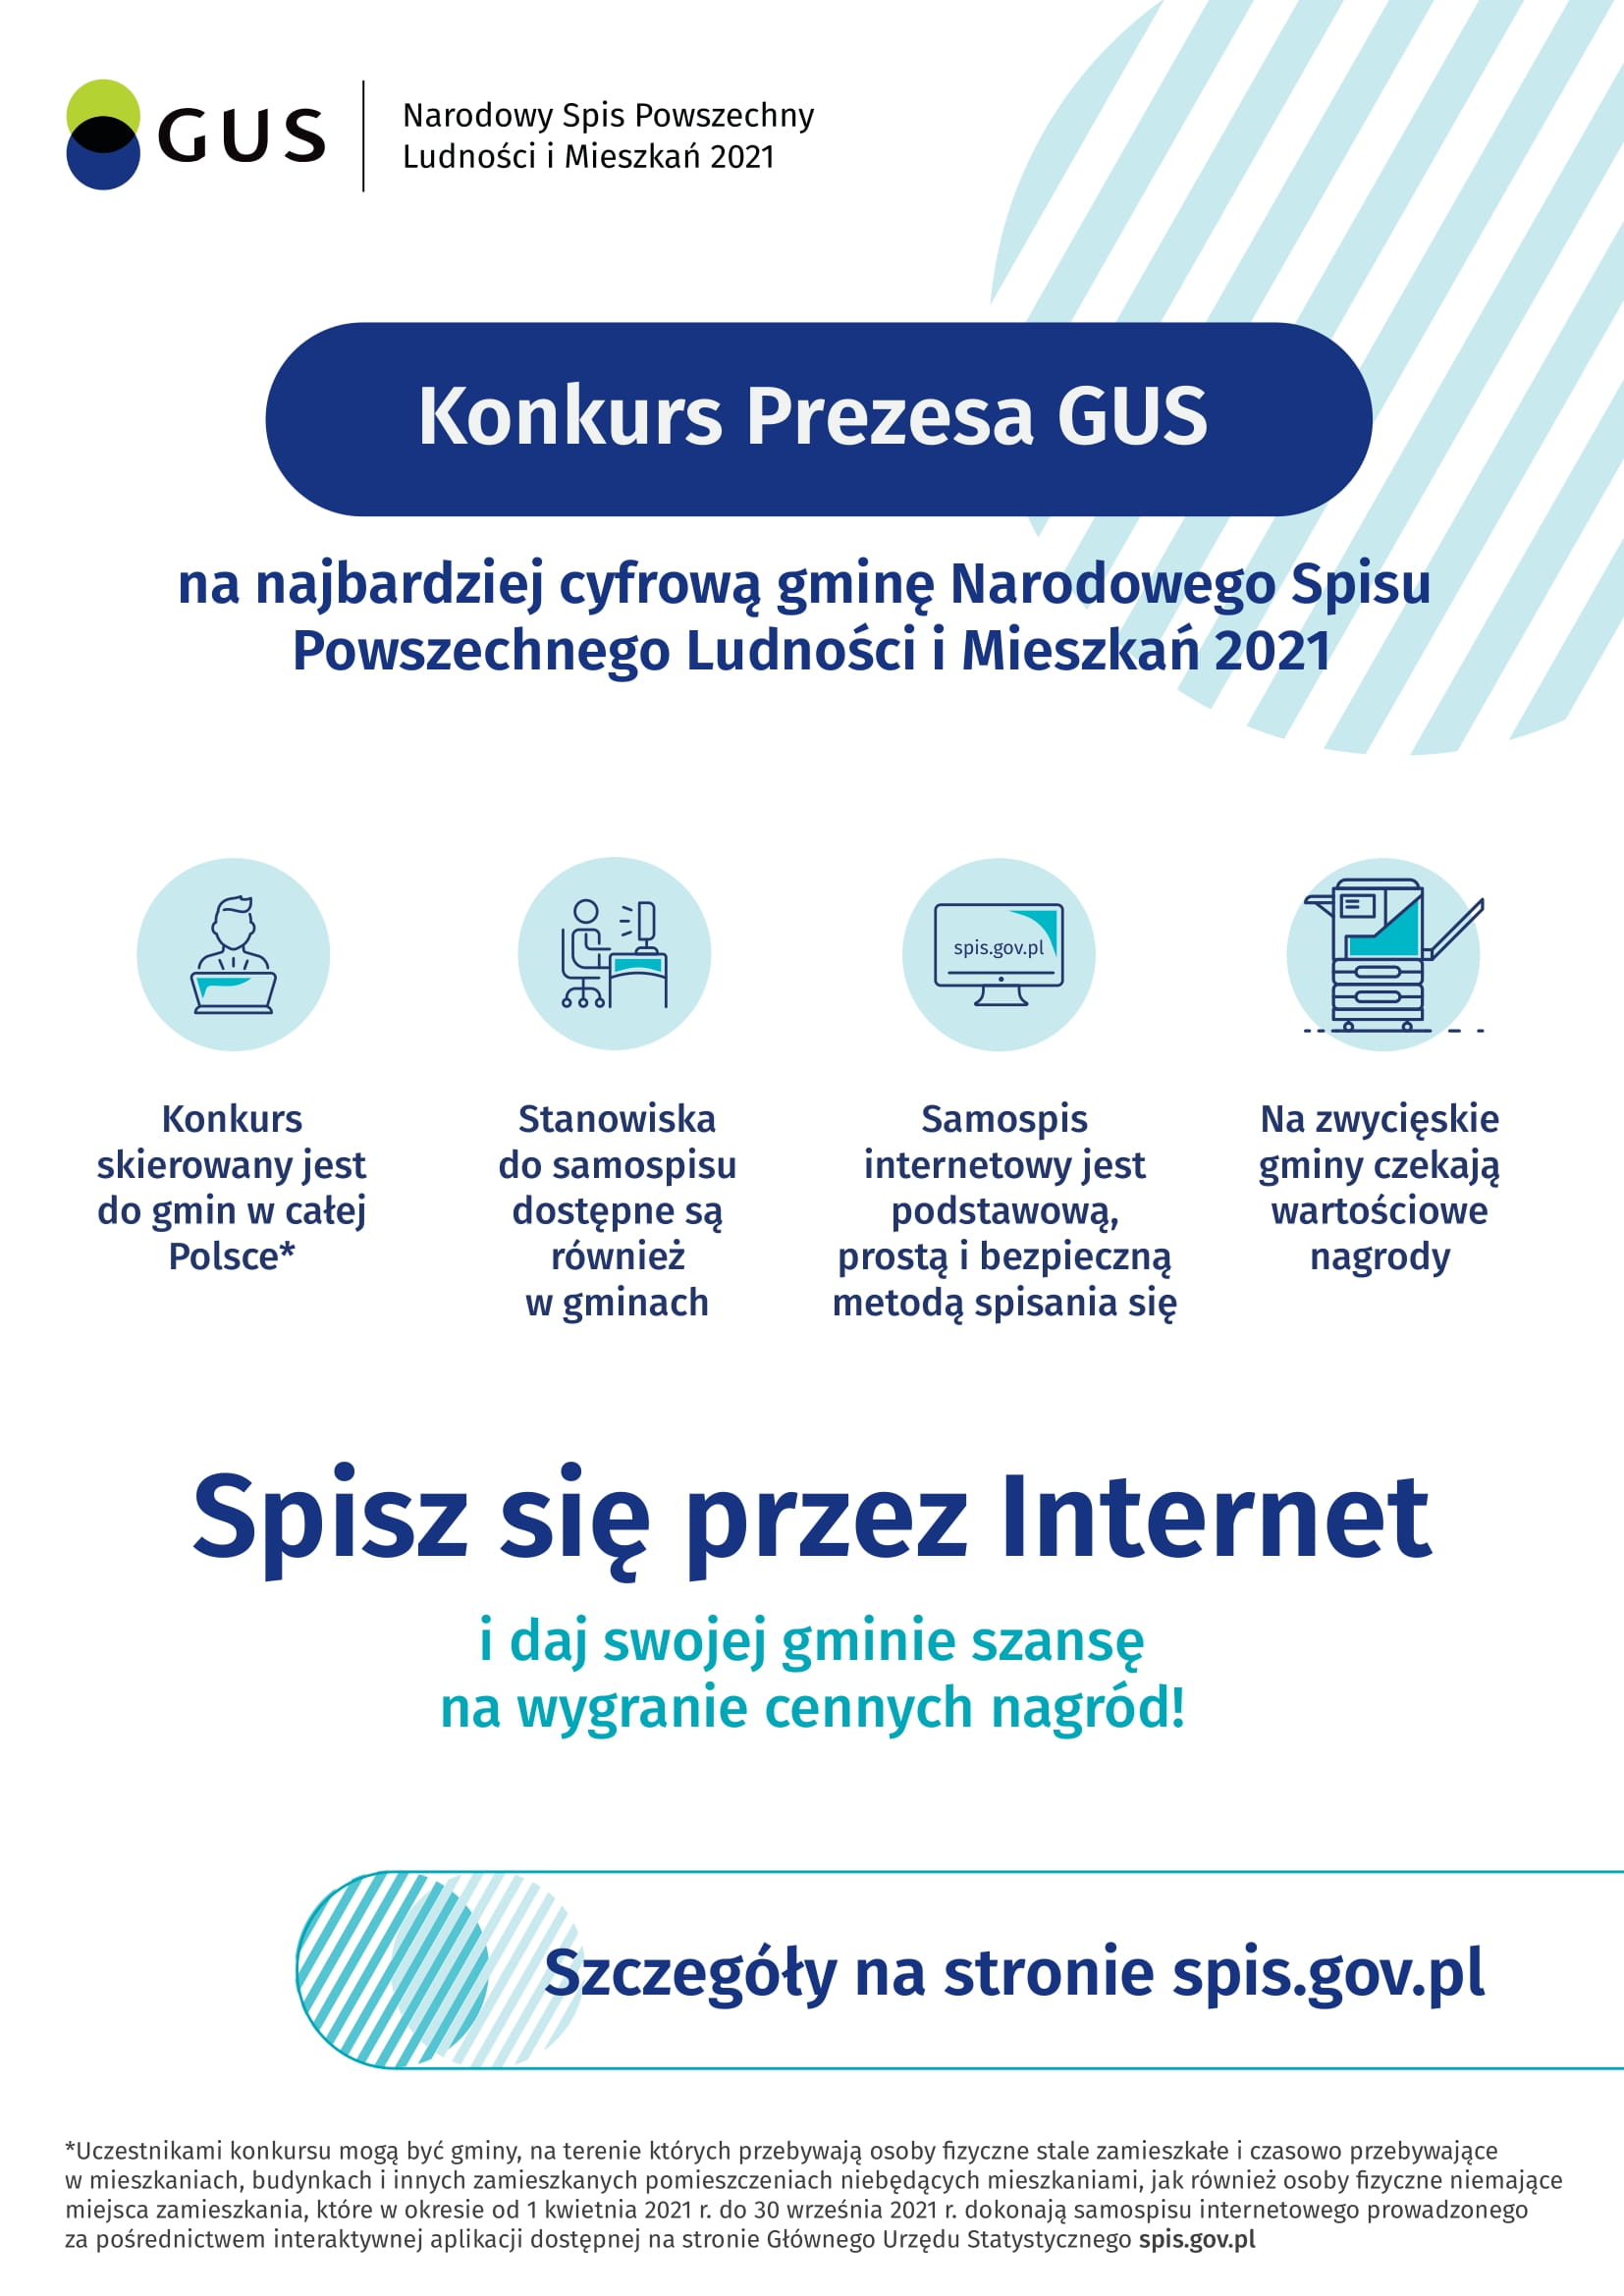 Plakat o konkursie Prezesa GUS na najbardziej cyfrową gminę NSP 2021, tekst pod plakatem.